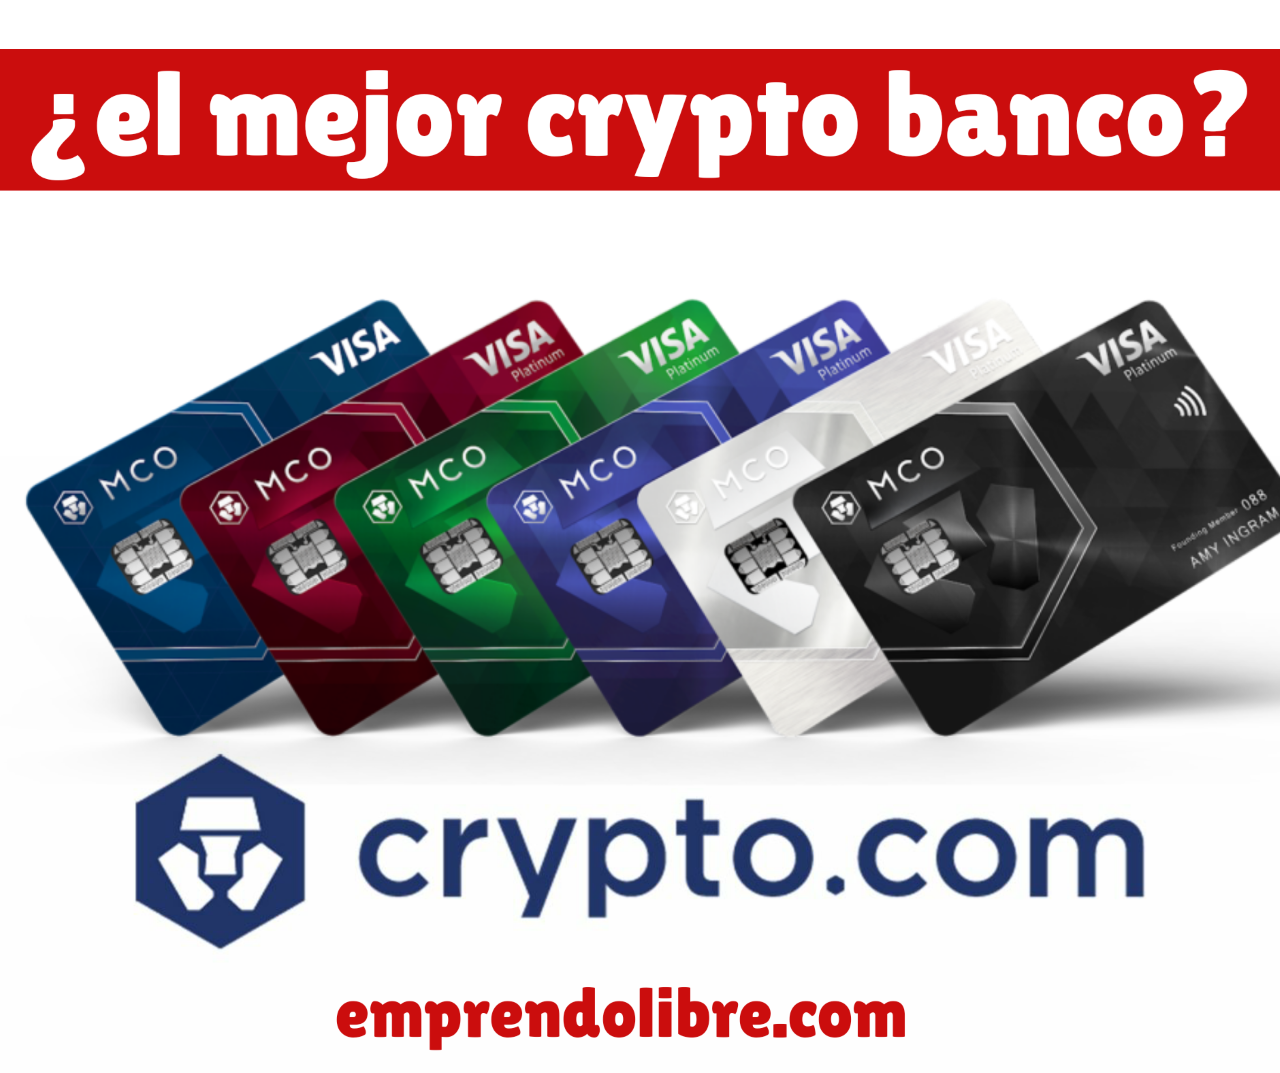 crypto.com en español